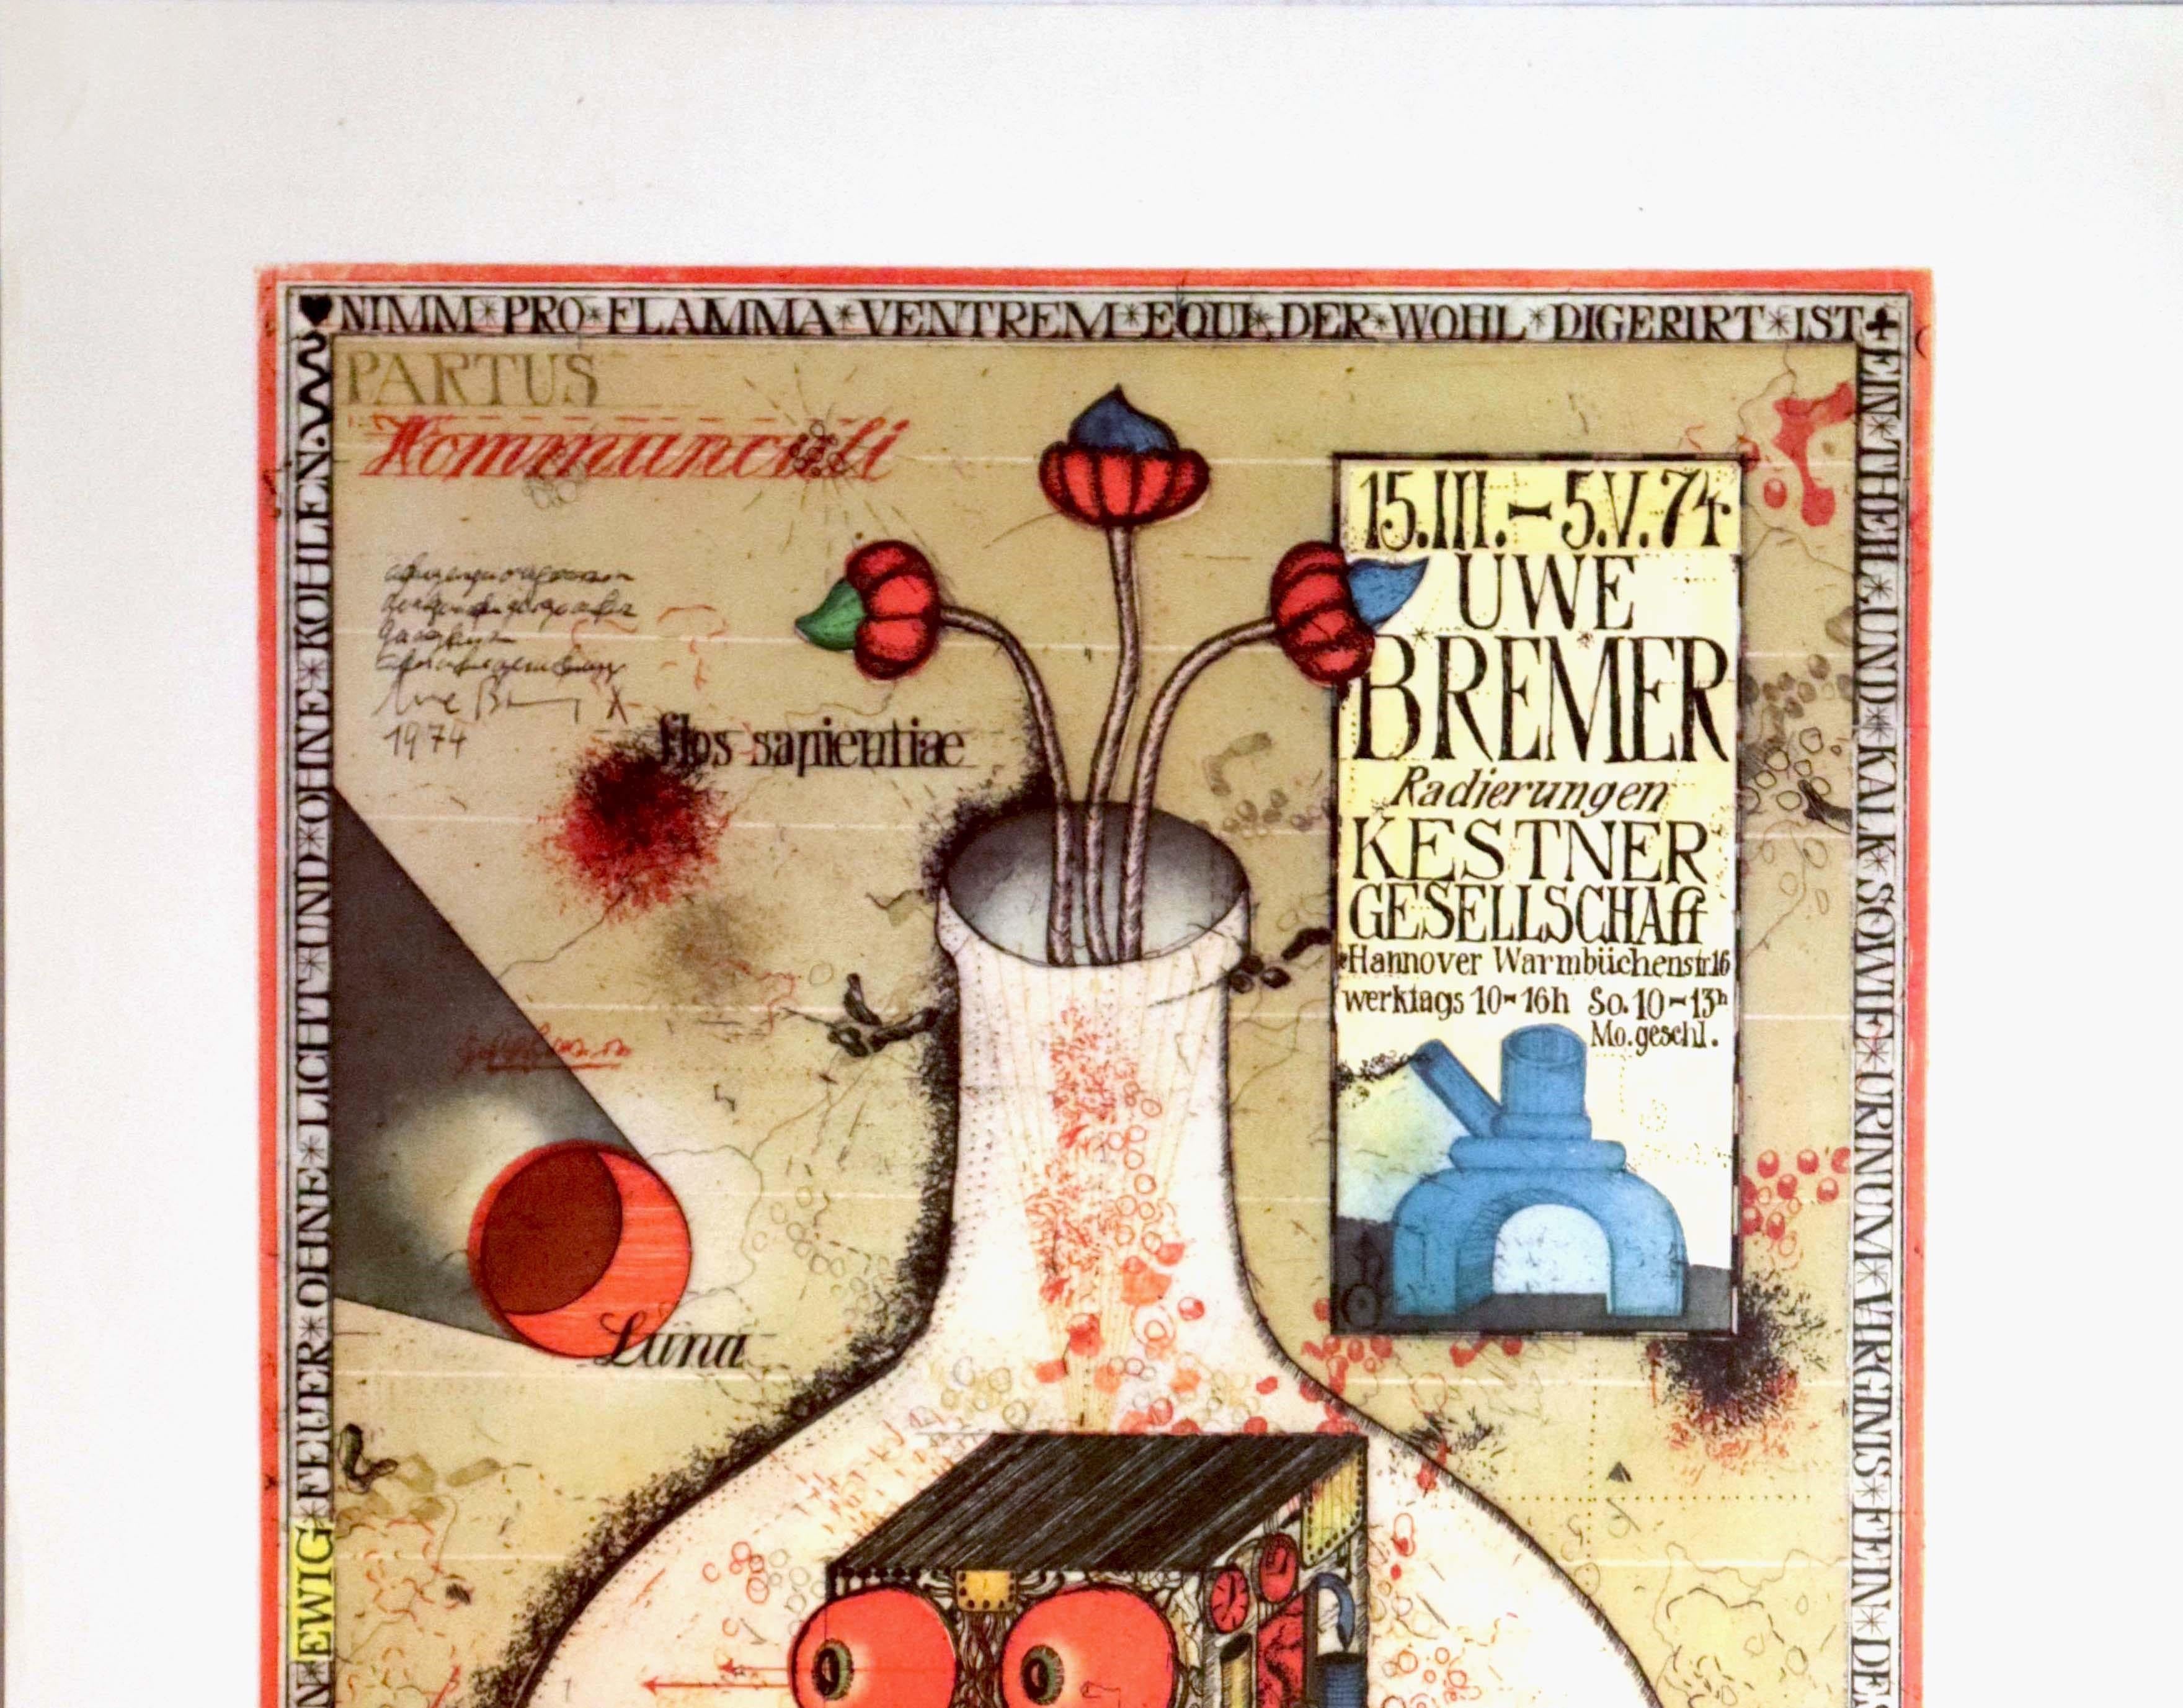 Original-Werbeplakat für eine Ausstellung von Radierungen und Kunstwerken des deutschen phantastisch-realistischen Malers und Grafikers Uwe Bremer (geb. 1940) in der Kestner-Gesellschaft in Hannover vom 15. März bis 5. Mai 1974. Das Plakat zeigt